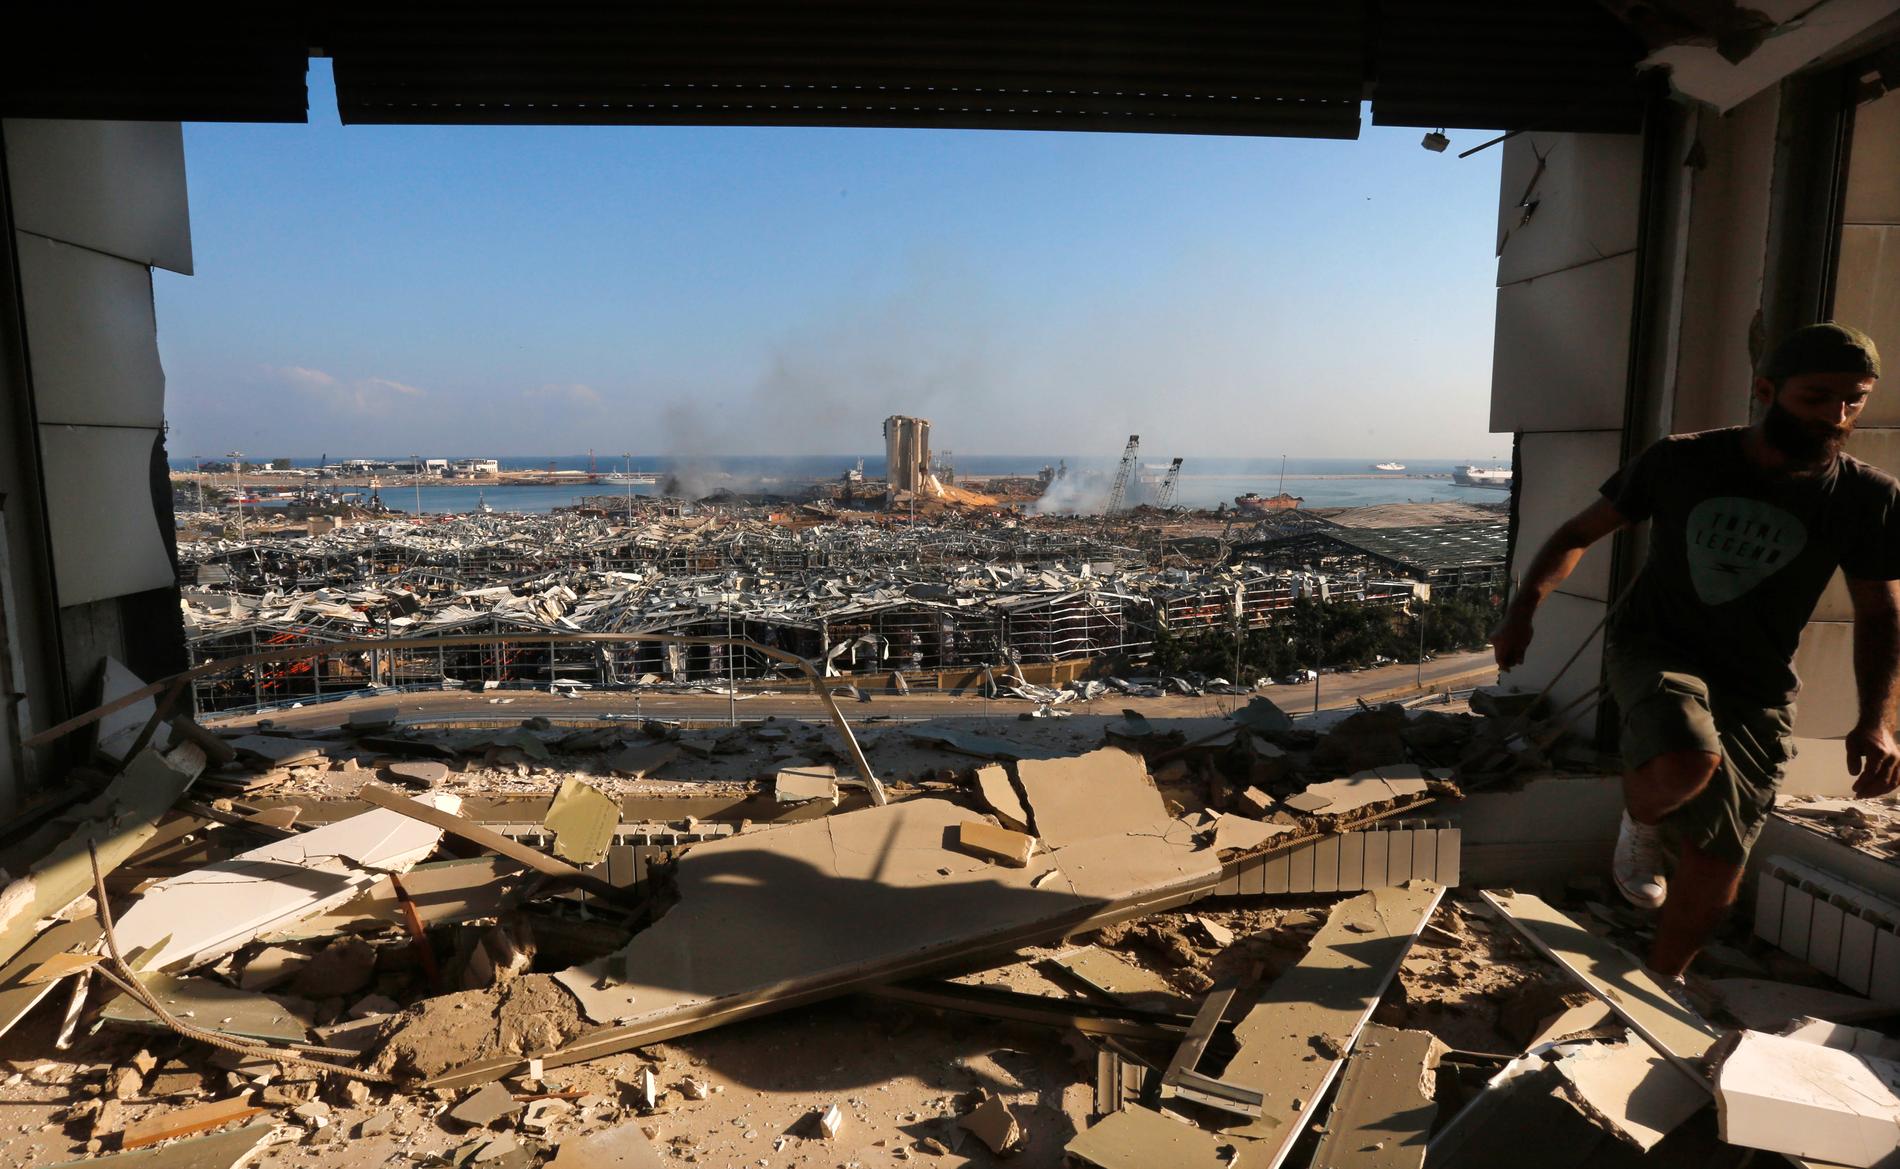 300 000 människor har blivit hemlösa efter explosionen som förstörde ett helt område. 